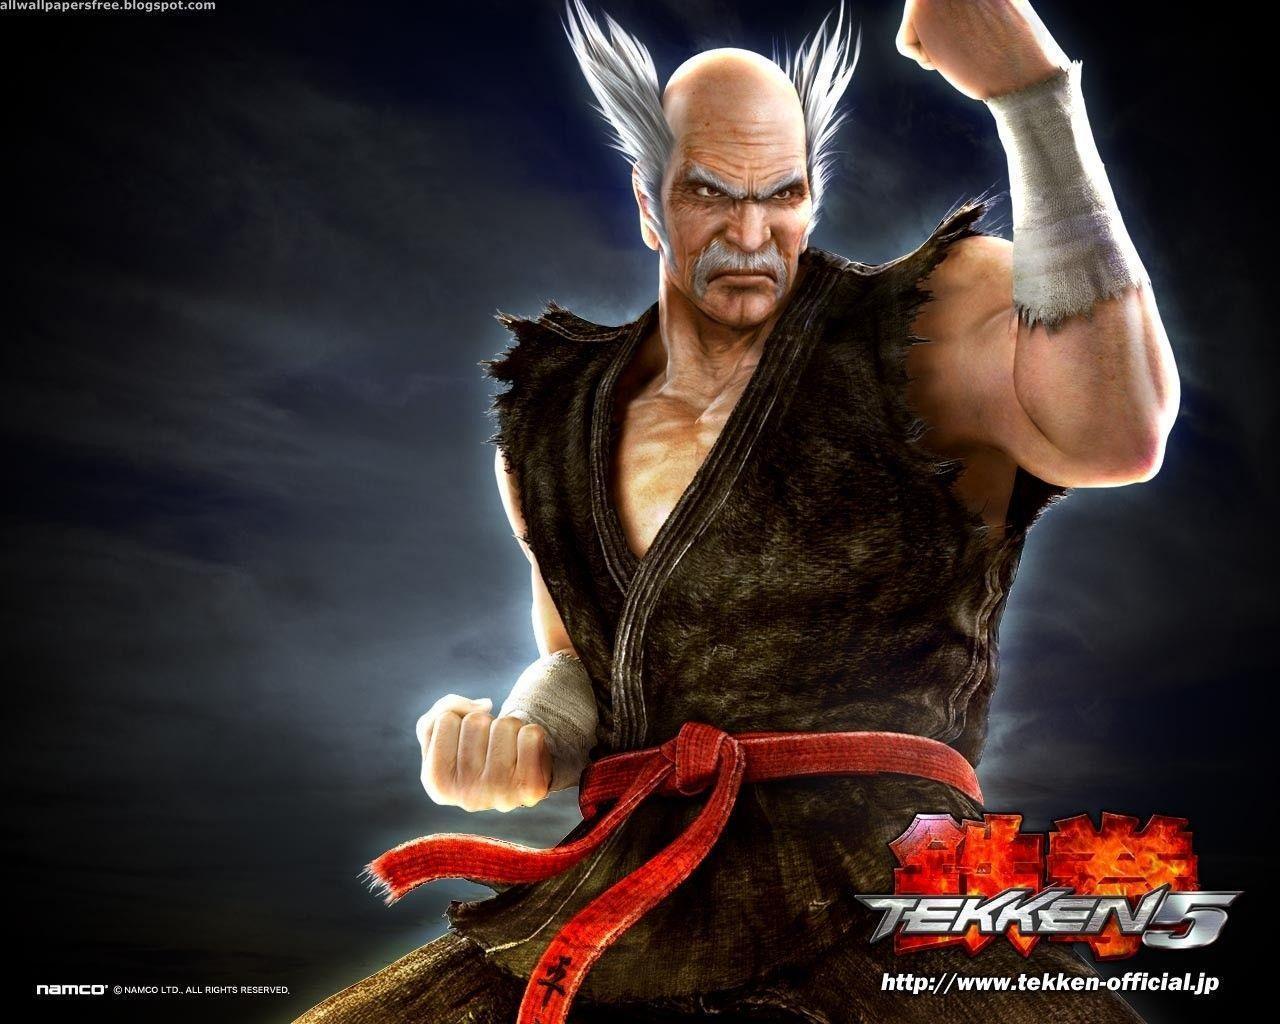 Tekken 5 Computer Wallpaper, Desktop Background 1280x1024 Id: 419209